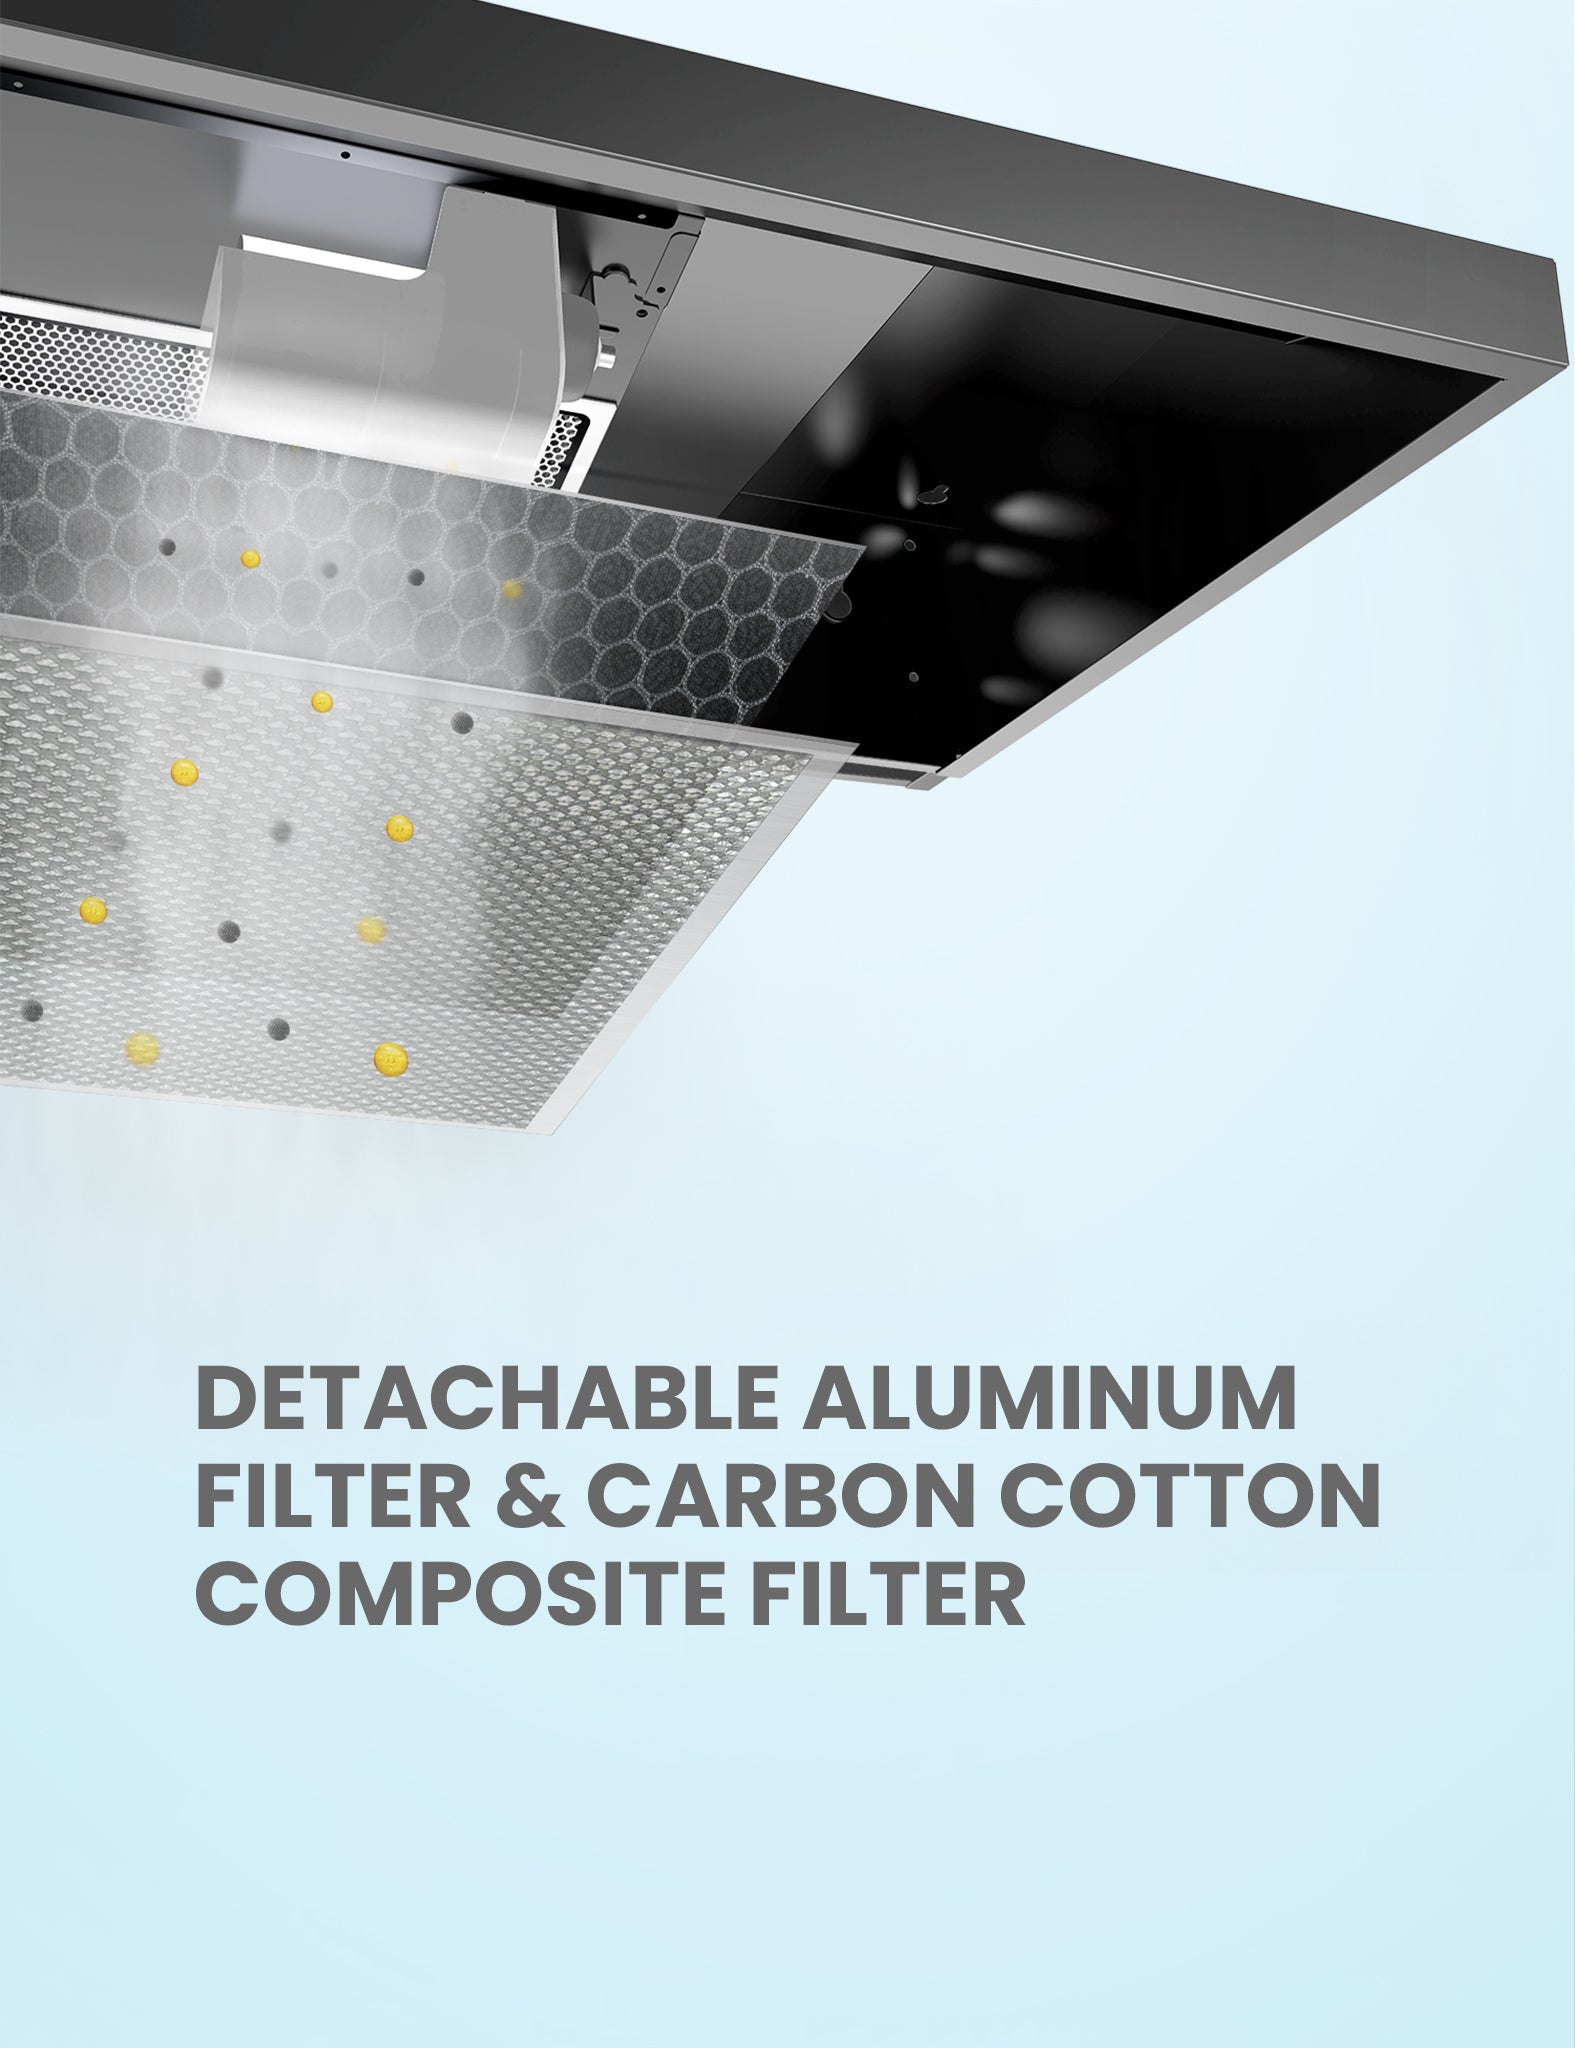 detachable aluminum and carbon cotton range hood filters